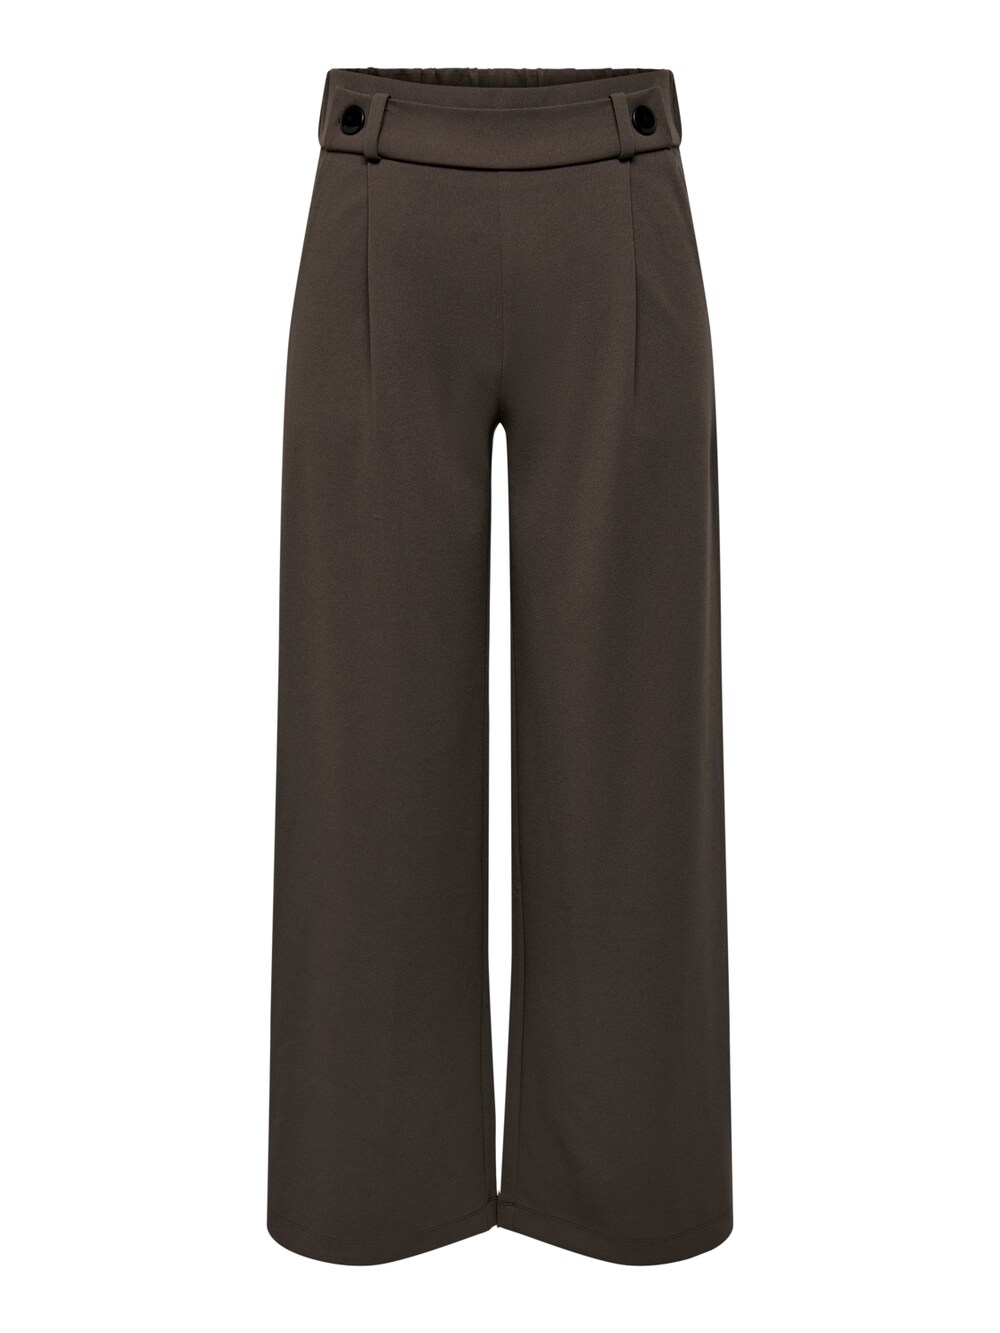 Широкие брюки со складками спереди JDY Geggo, темно коричневый